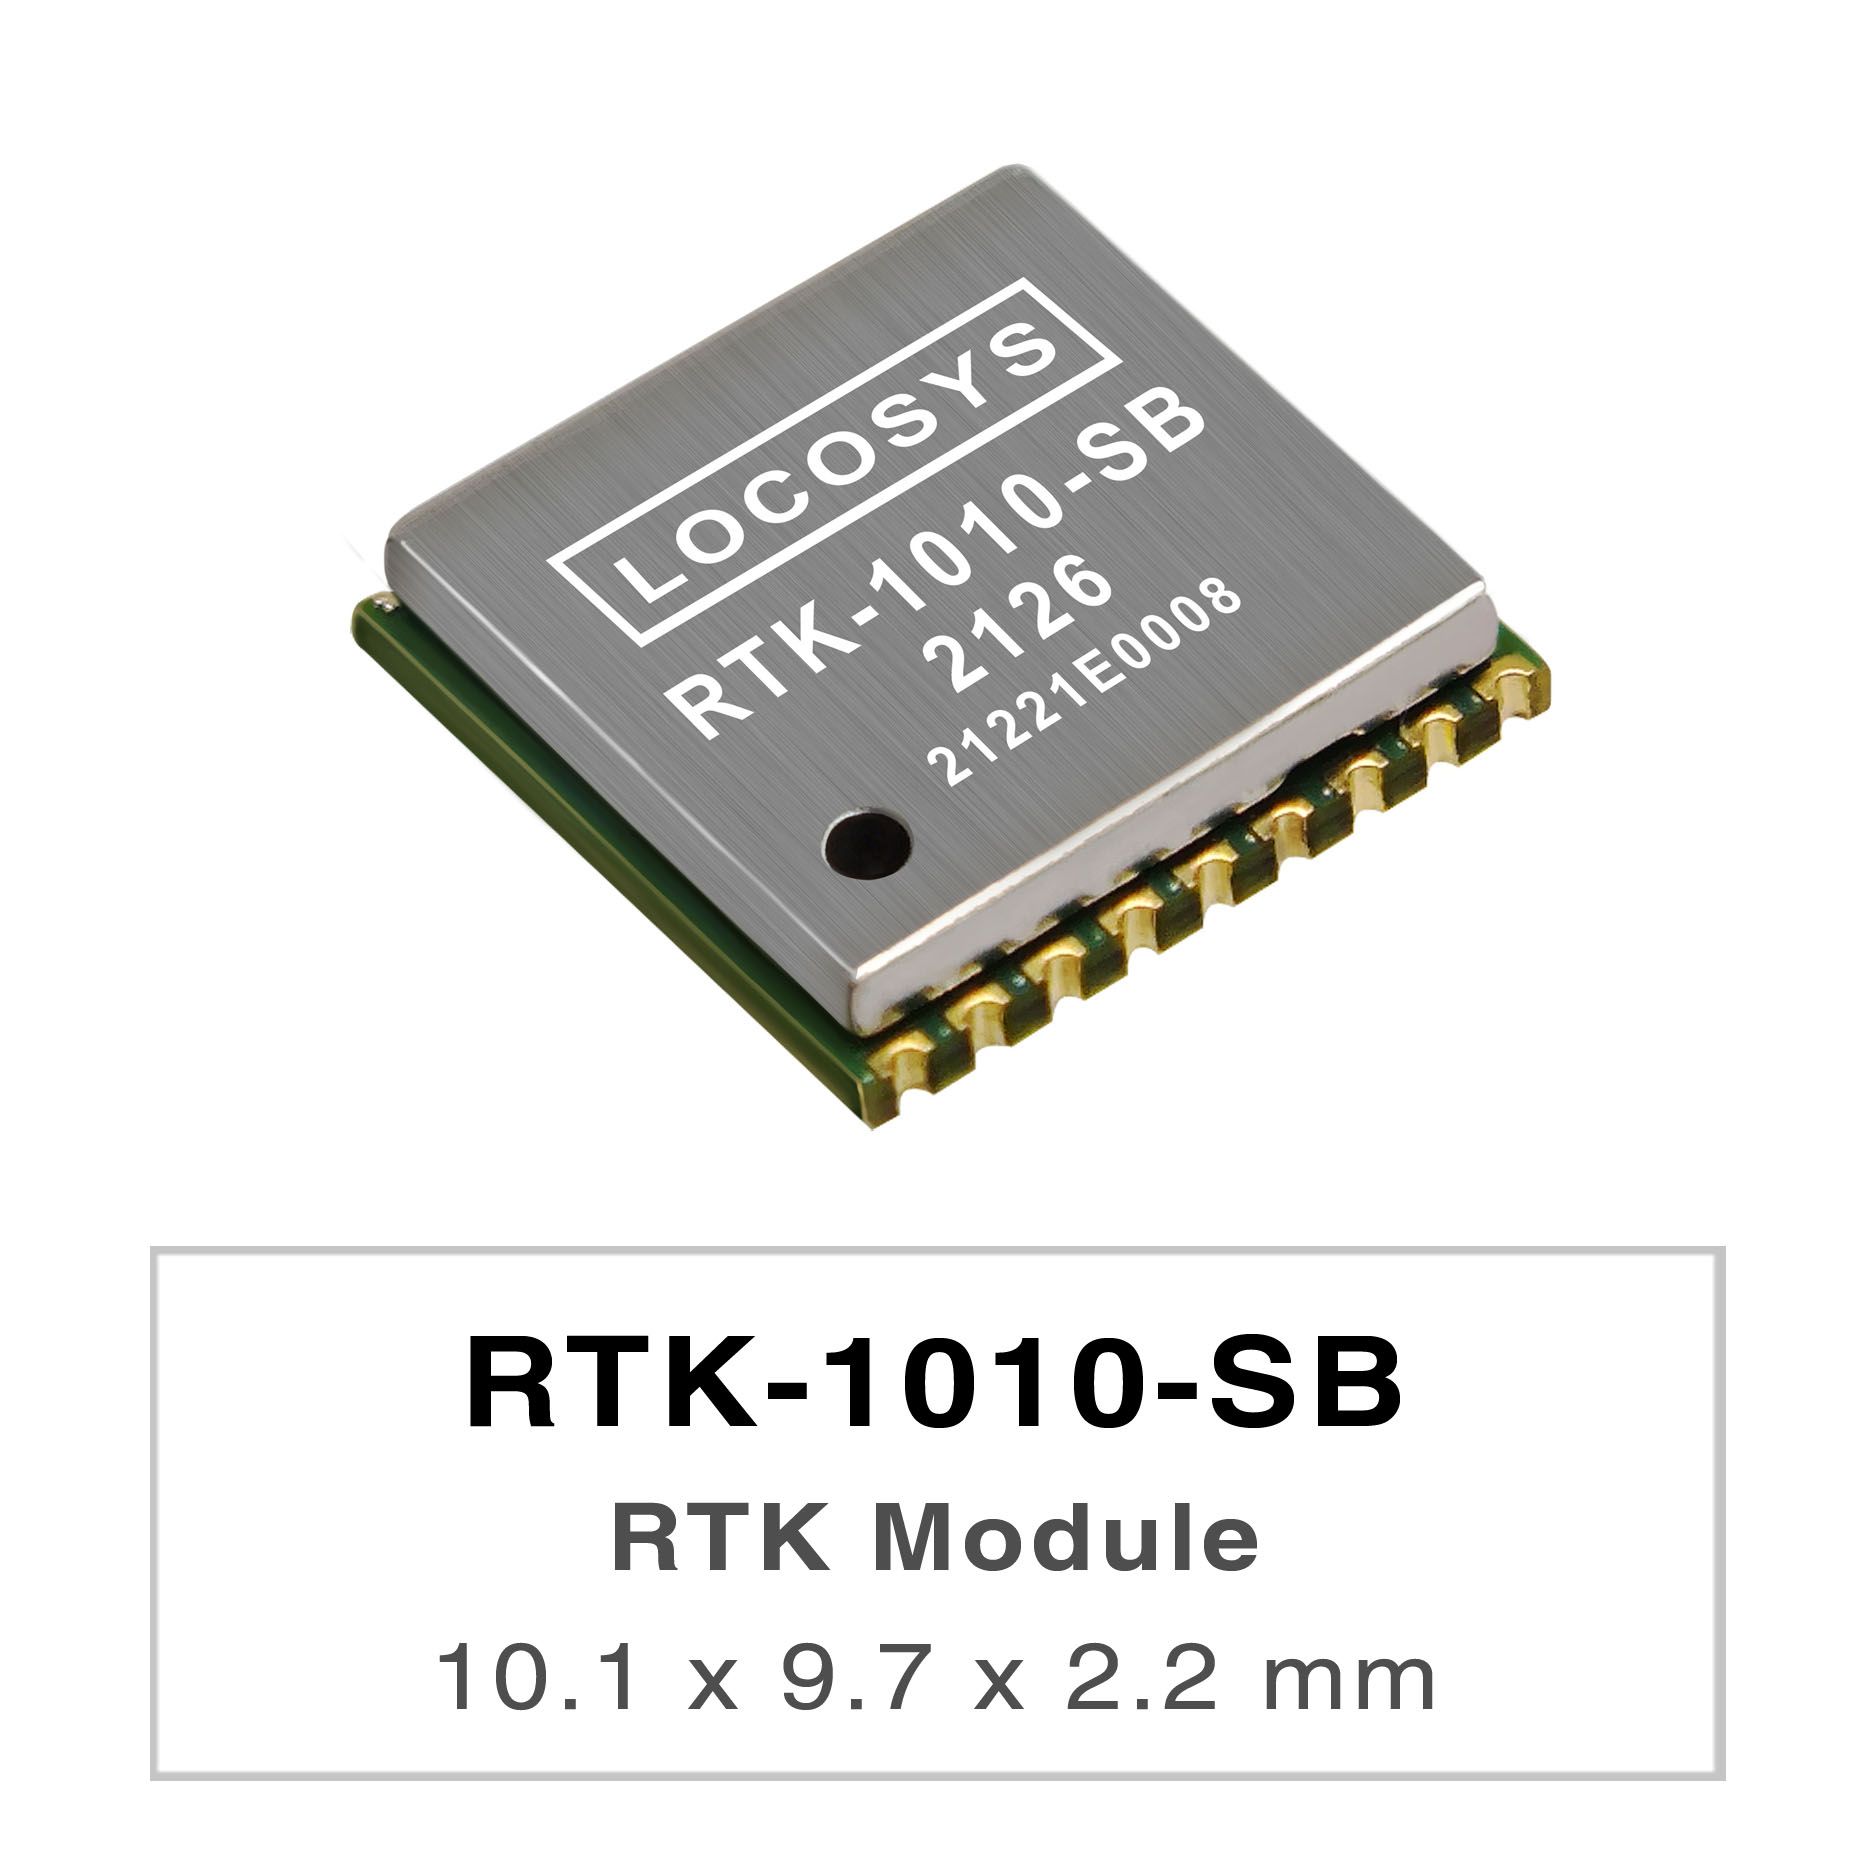 RTK-1010-SB